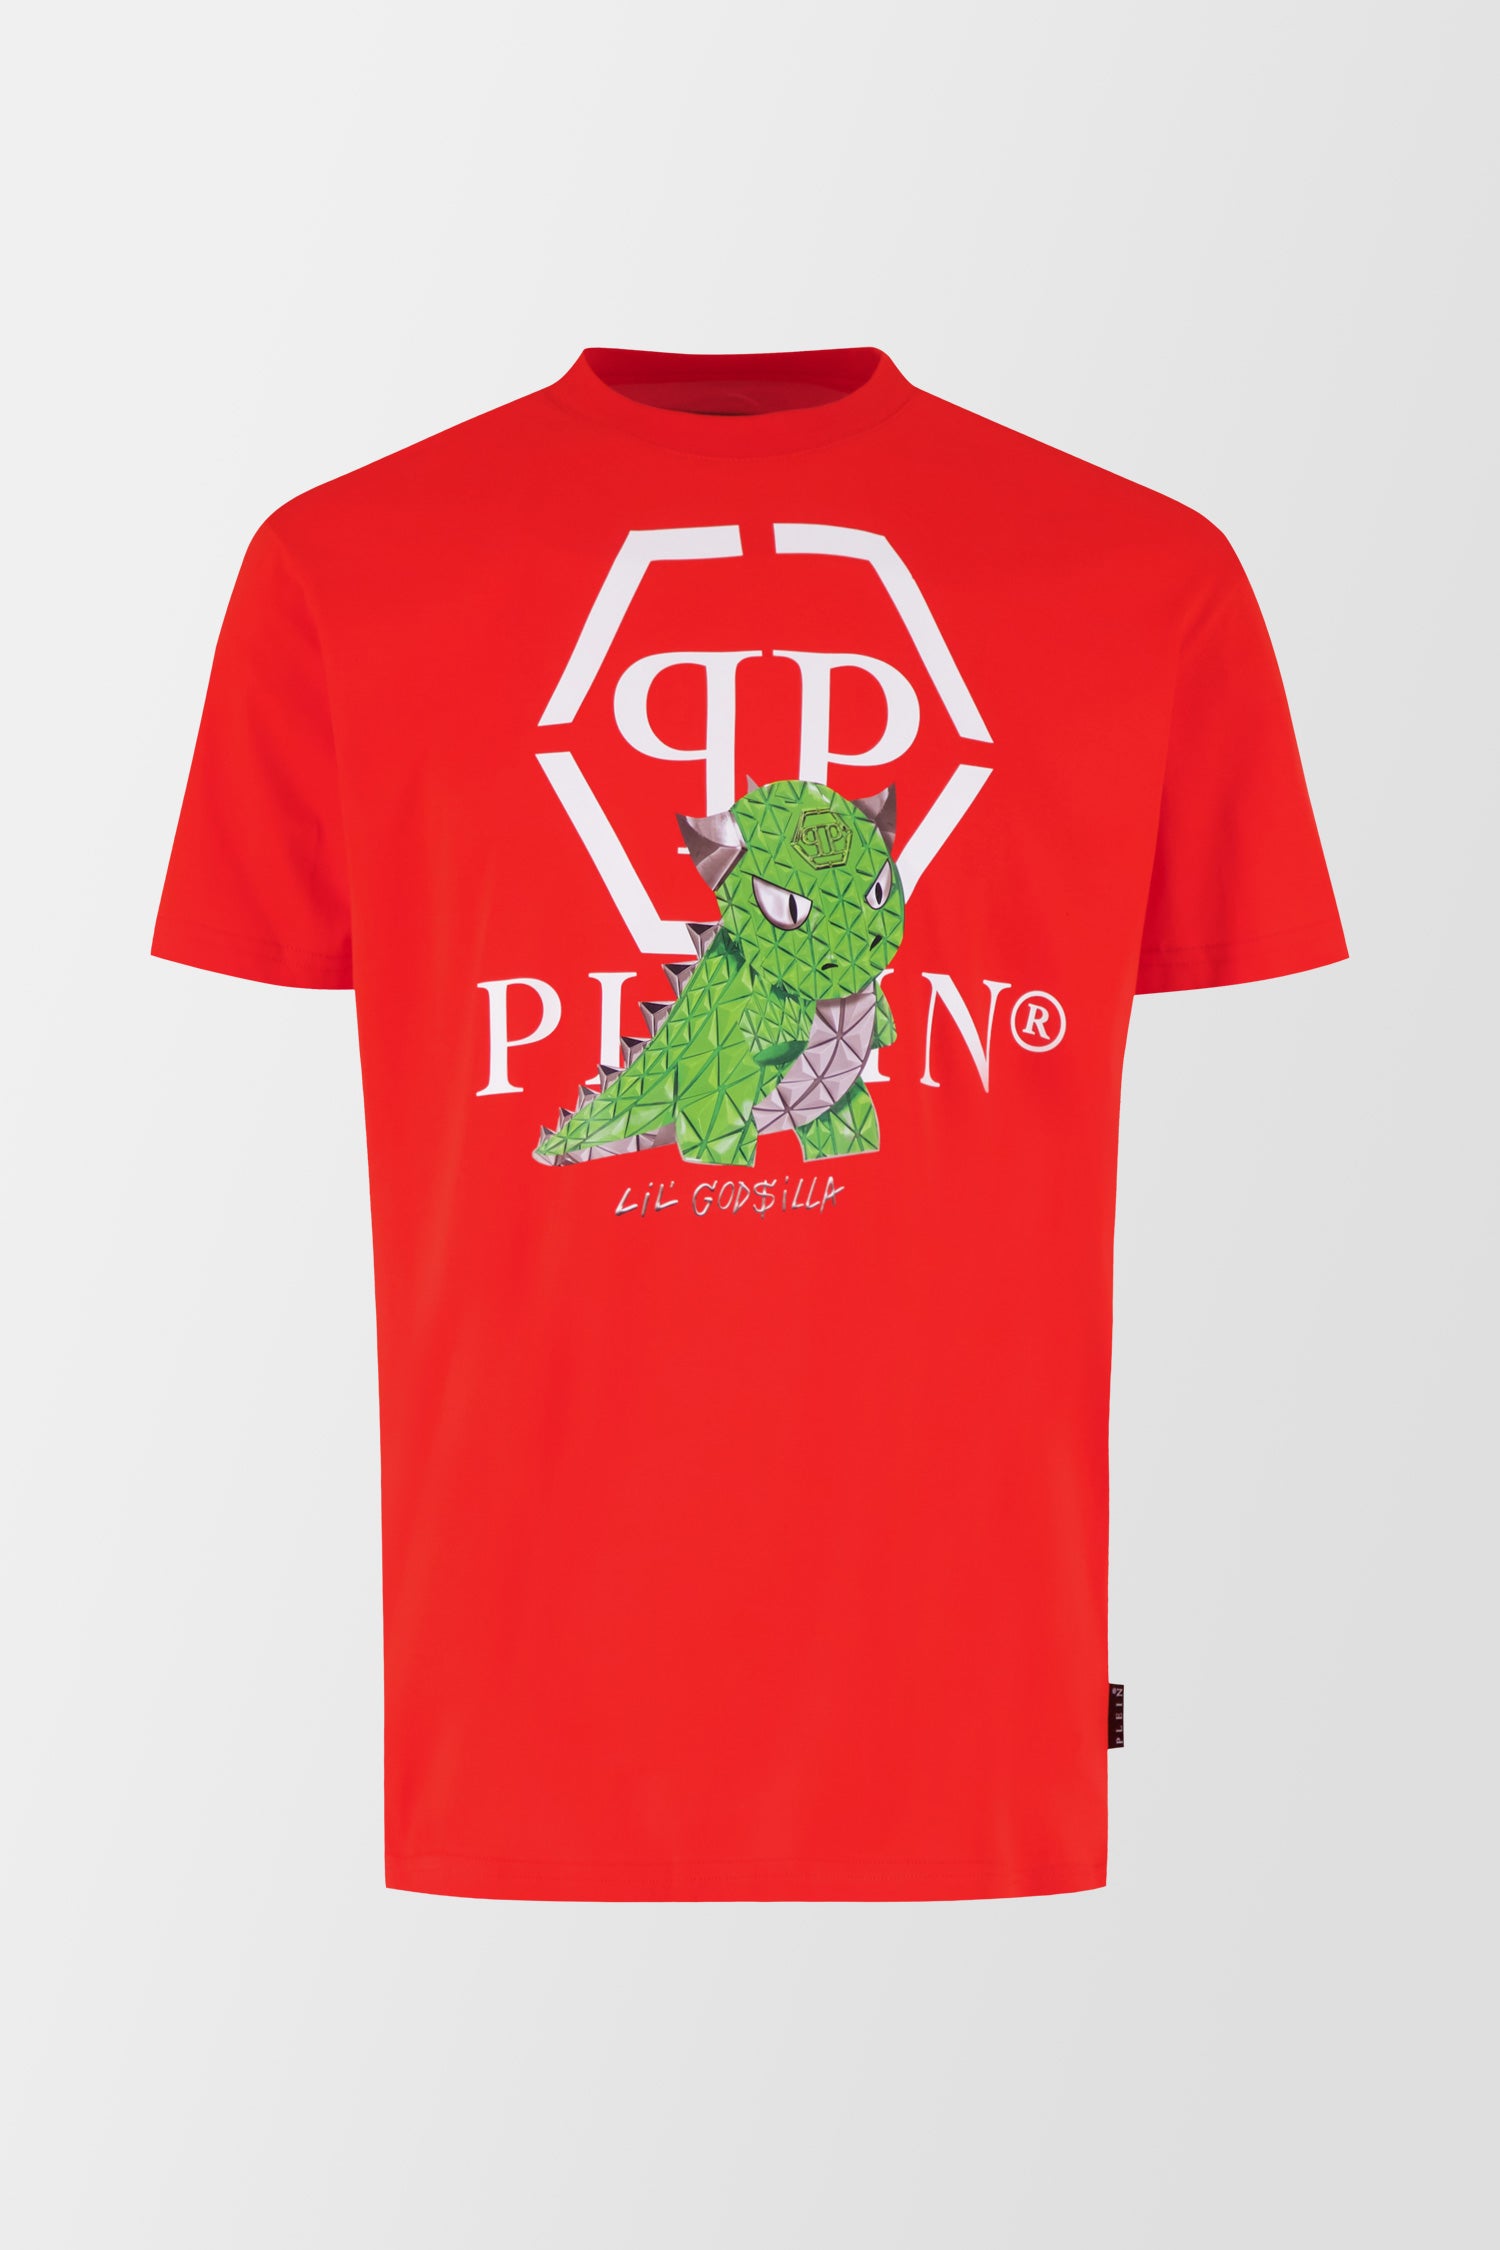 Philipp Plein Red Round Neck SS Monster T-Shirt